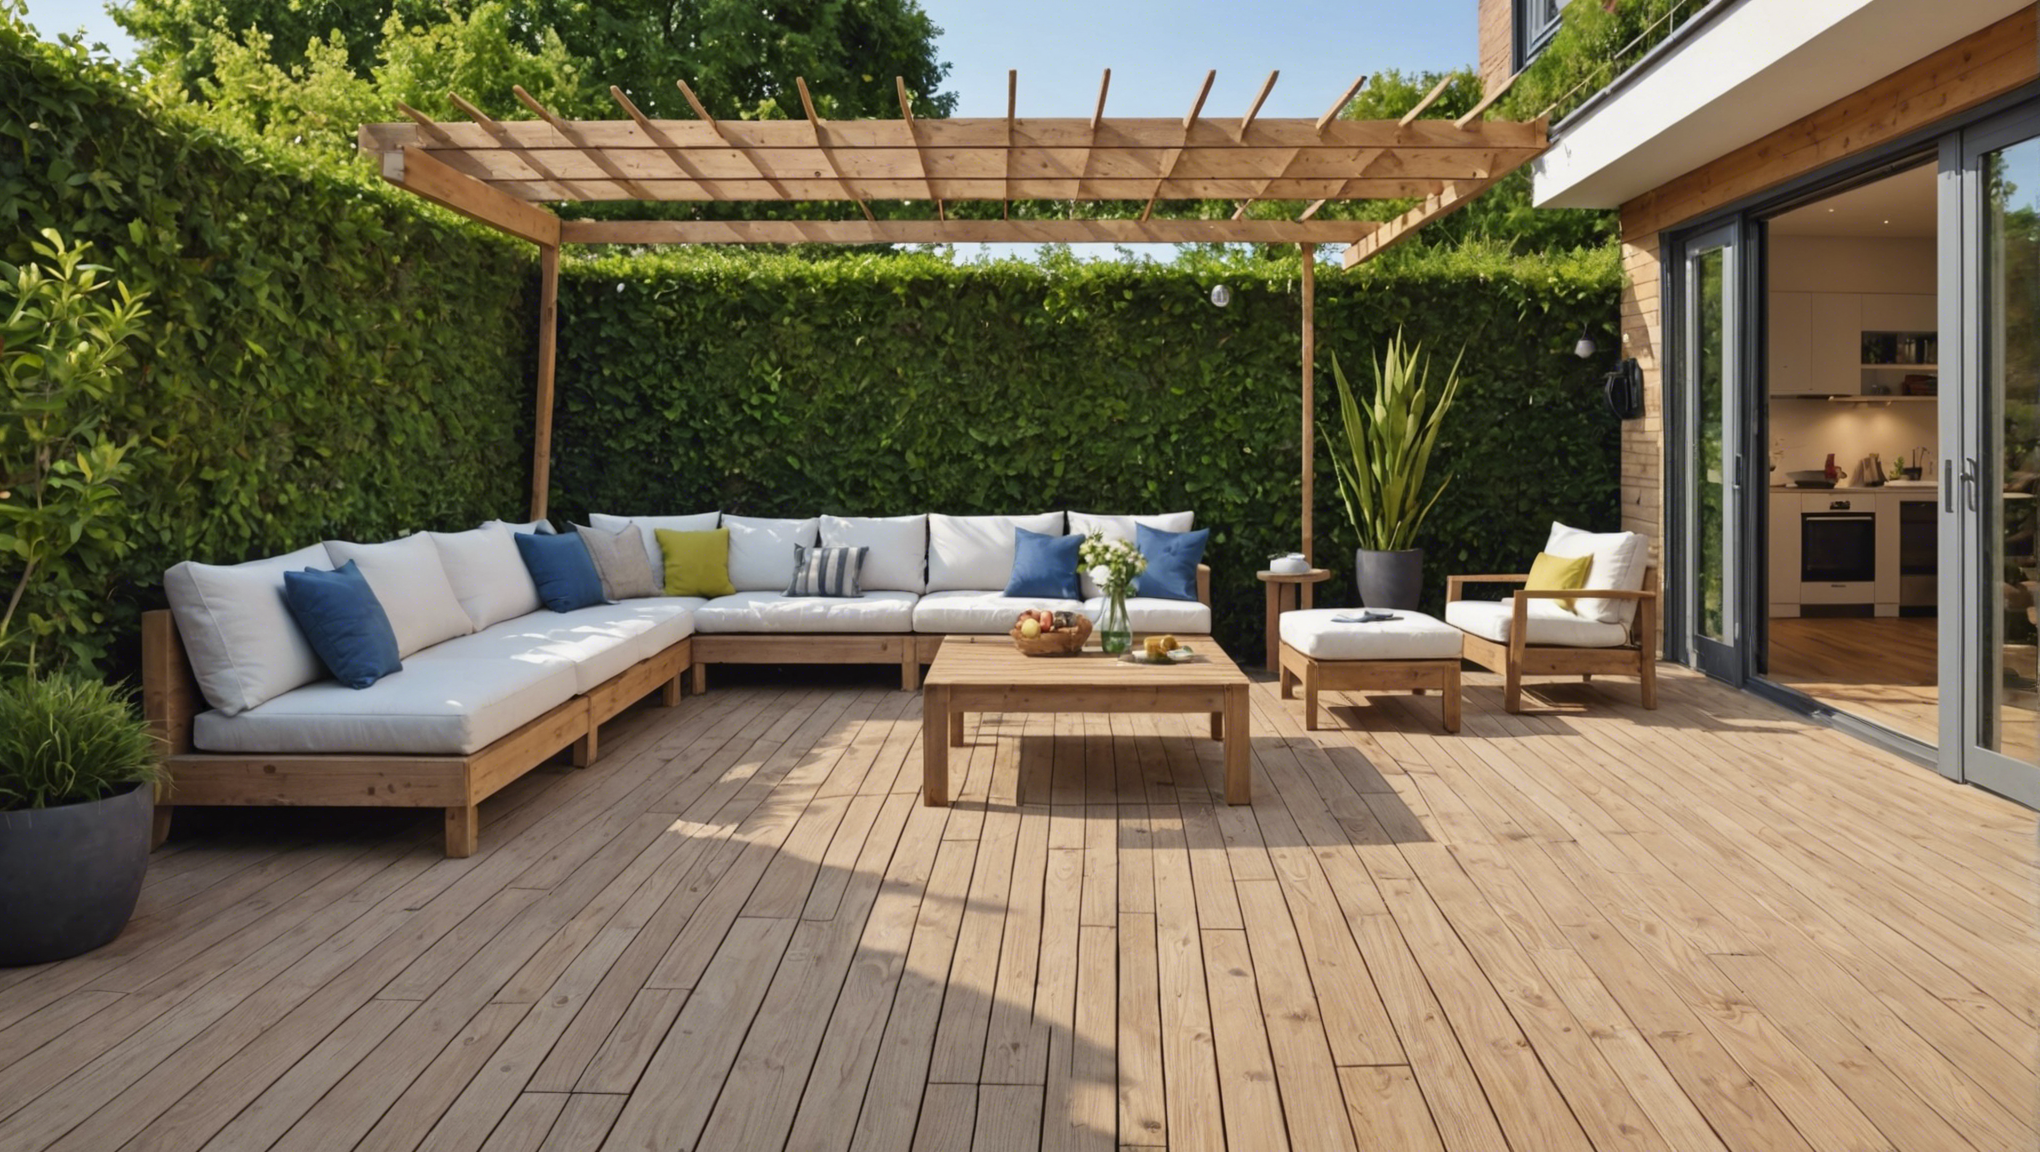 découvrez les matériaux nobles qui peuvent sublimer votre terrasse et apporter une touche d'élégance à votre espace extérieur.